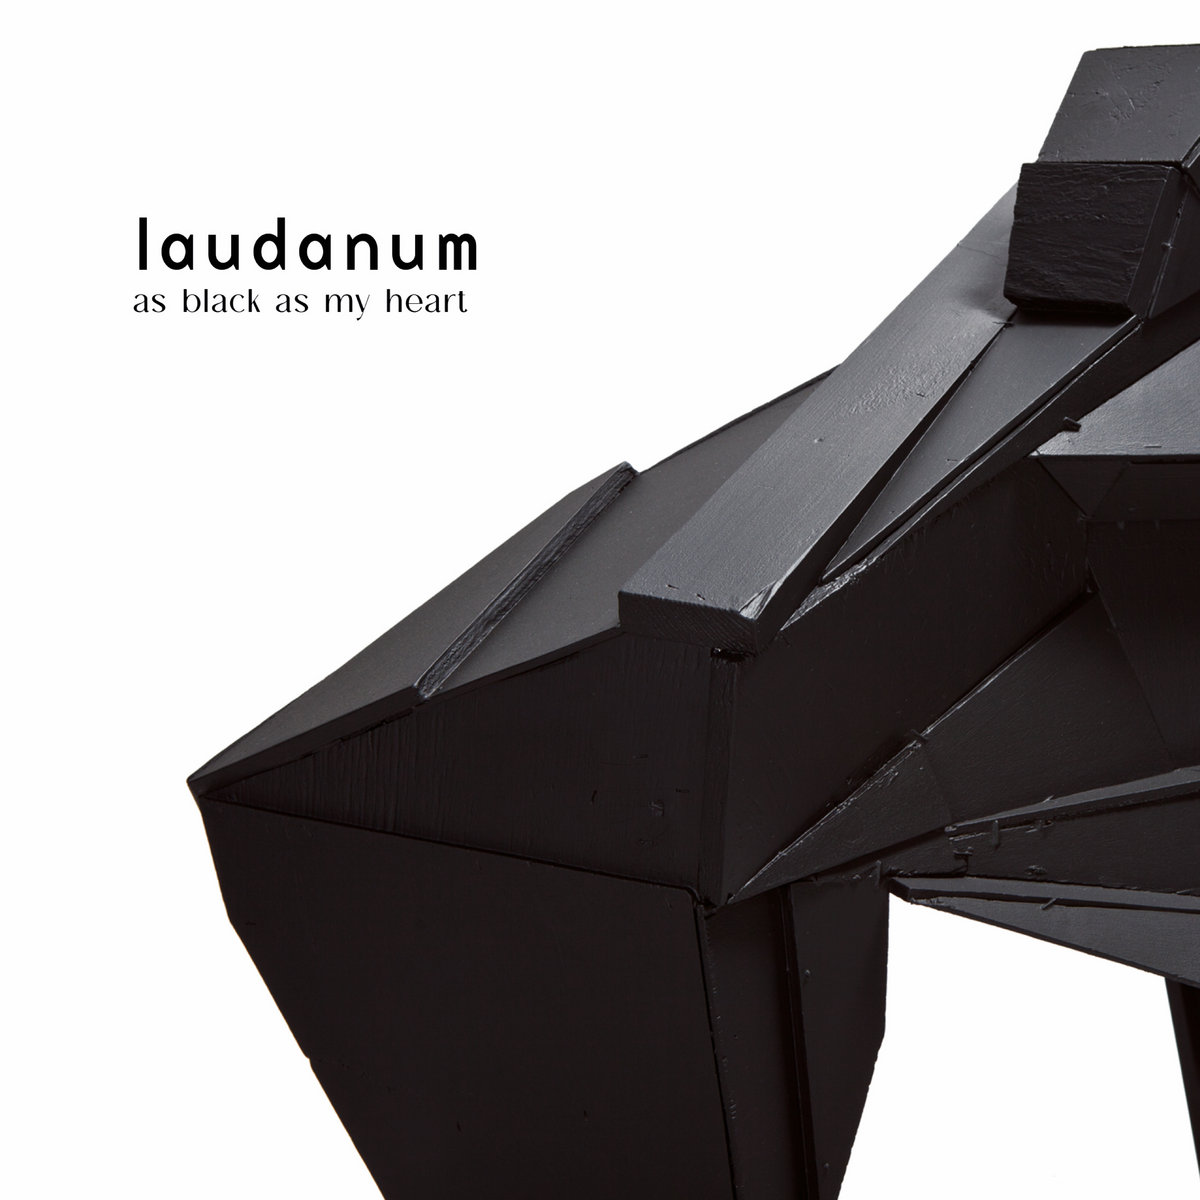 Laudanum – As black as my heart